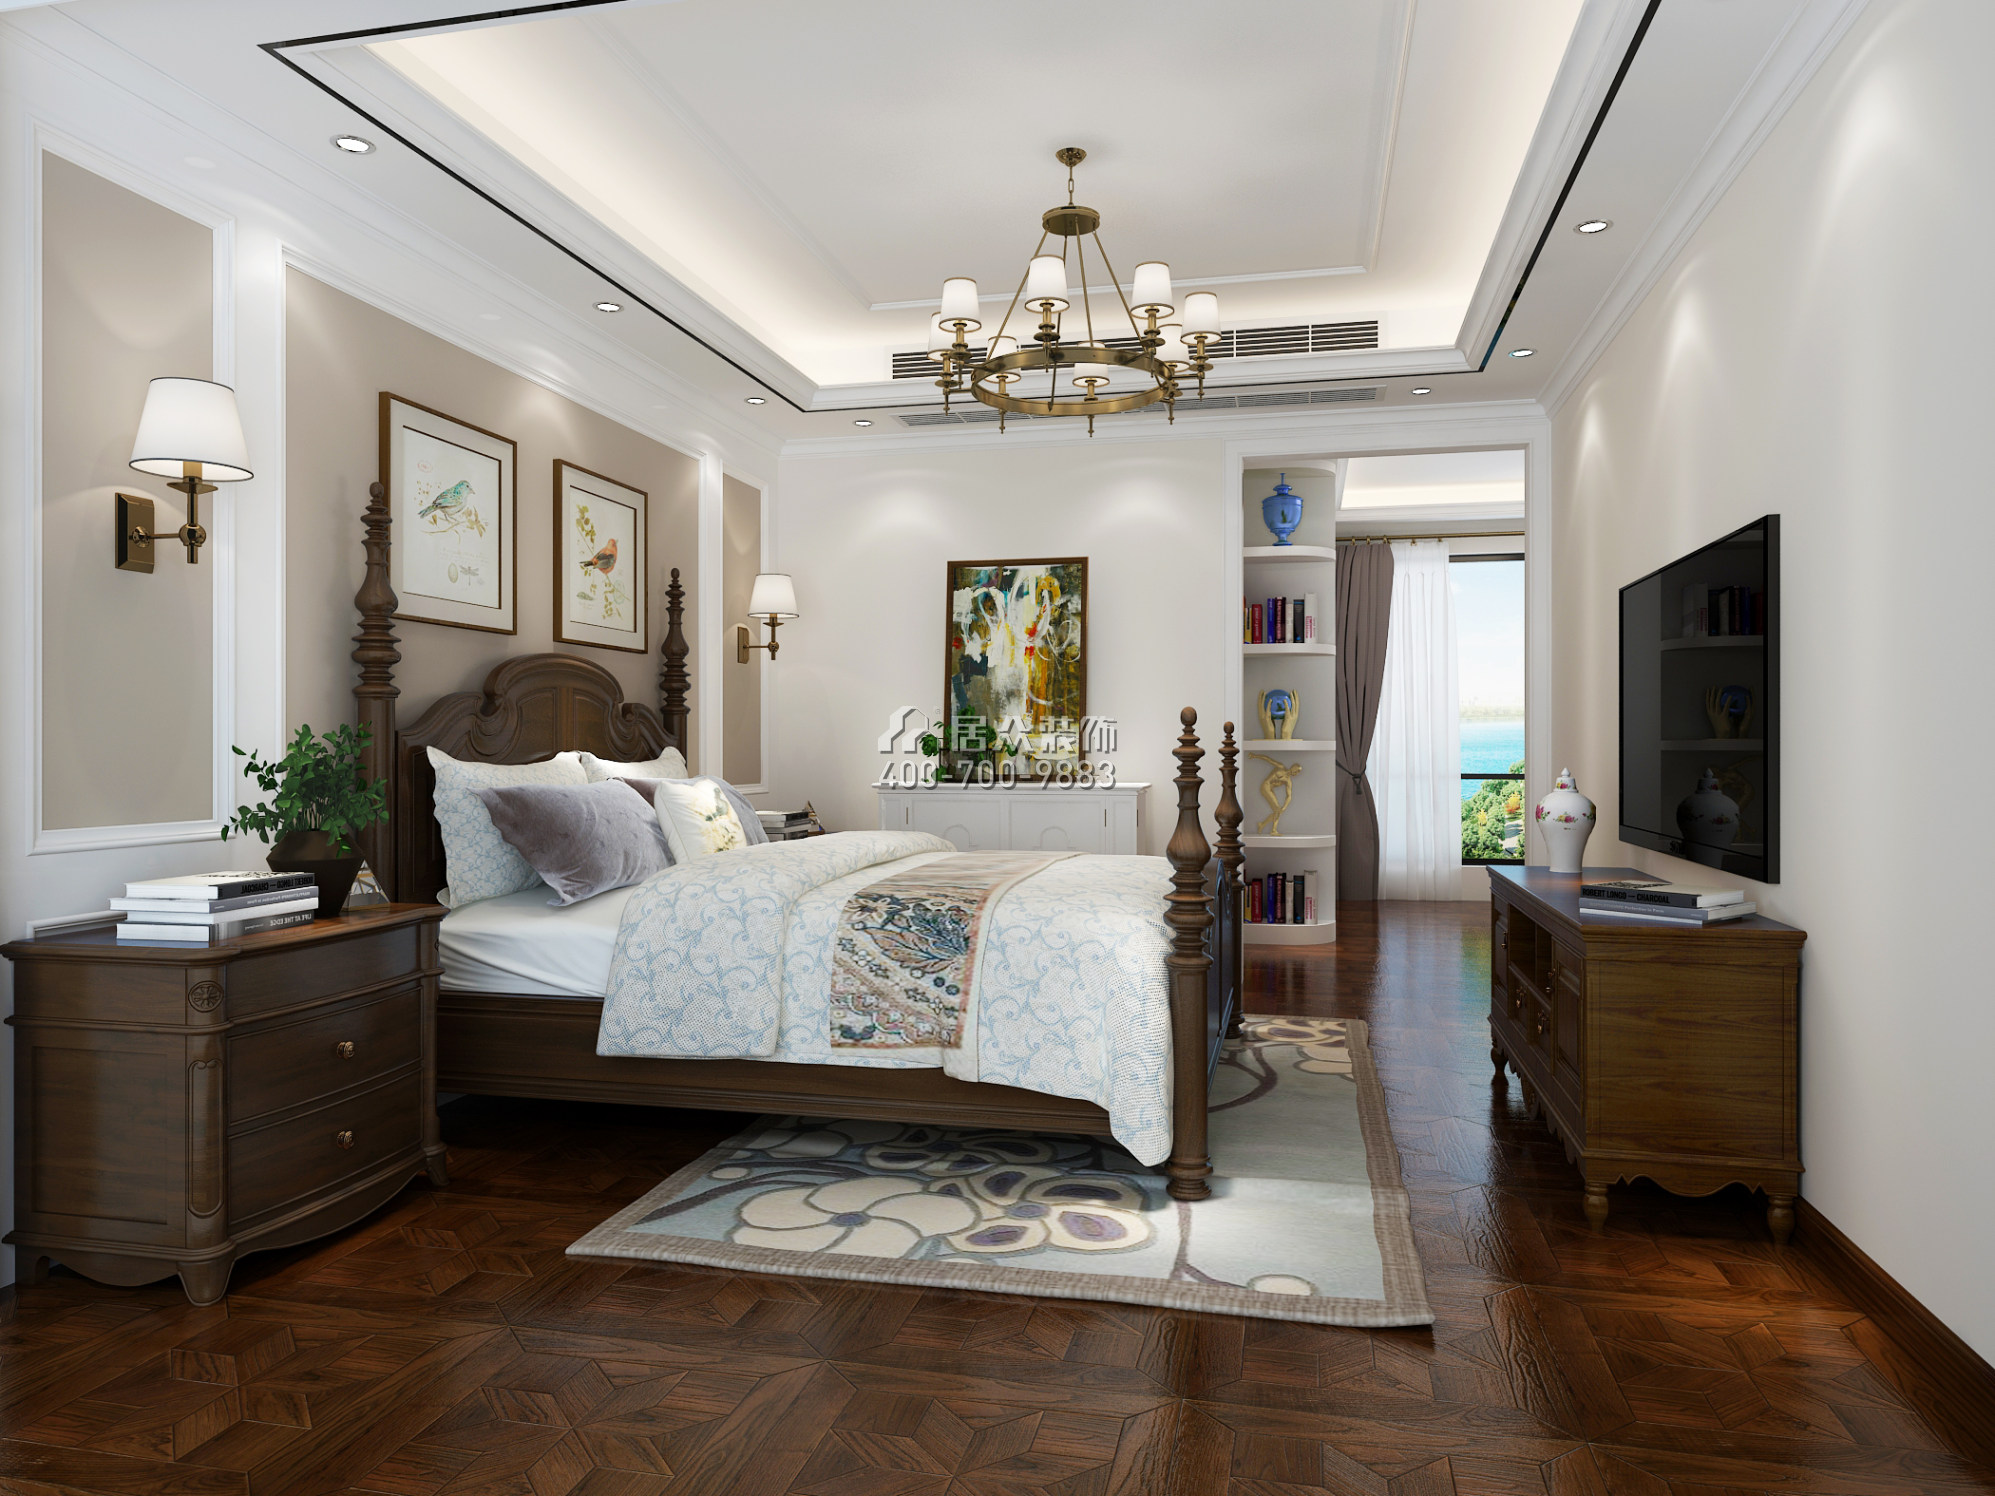 联投东方华府二期120平方米美式风格平层户型卧室装修效果图